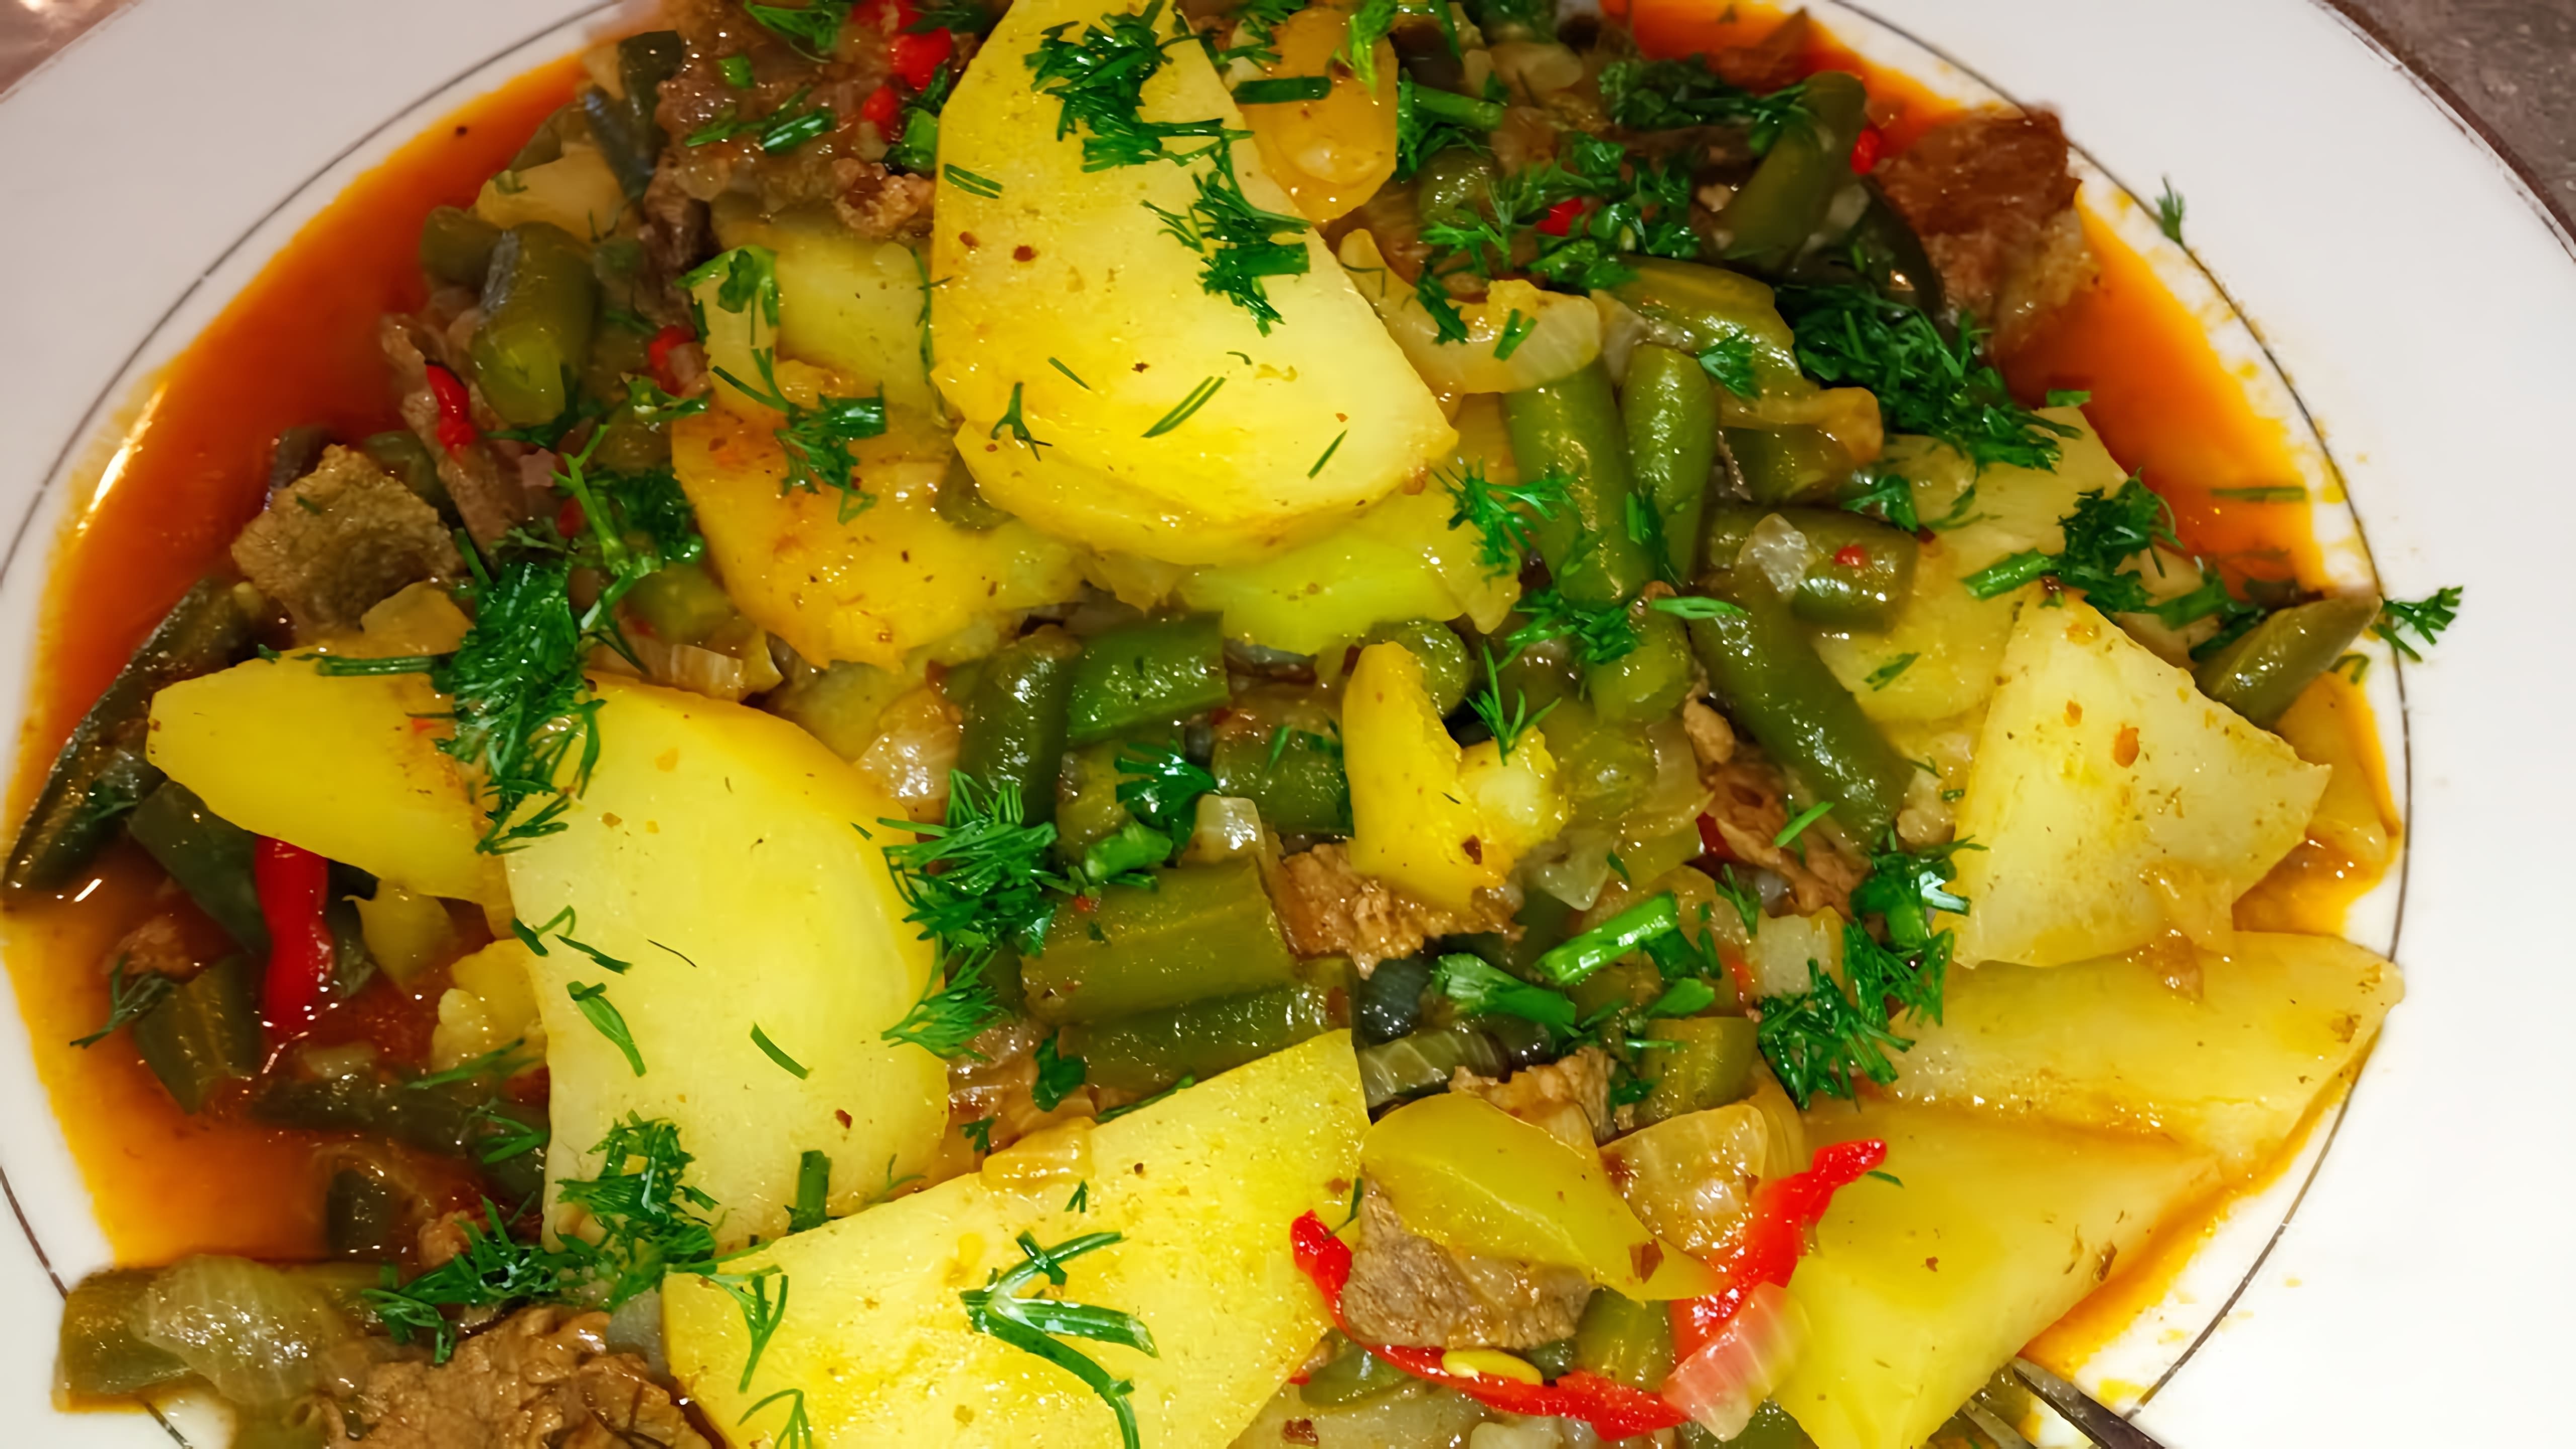 В этом видео демонстрируется процесс приготовления обеда из зелёной фасоли с мясом и картофелем